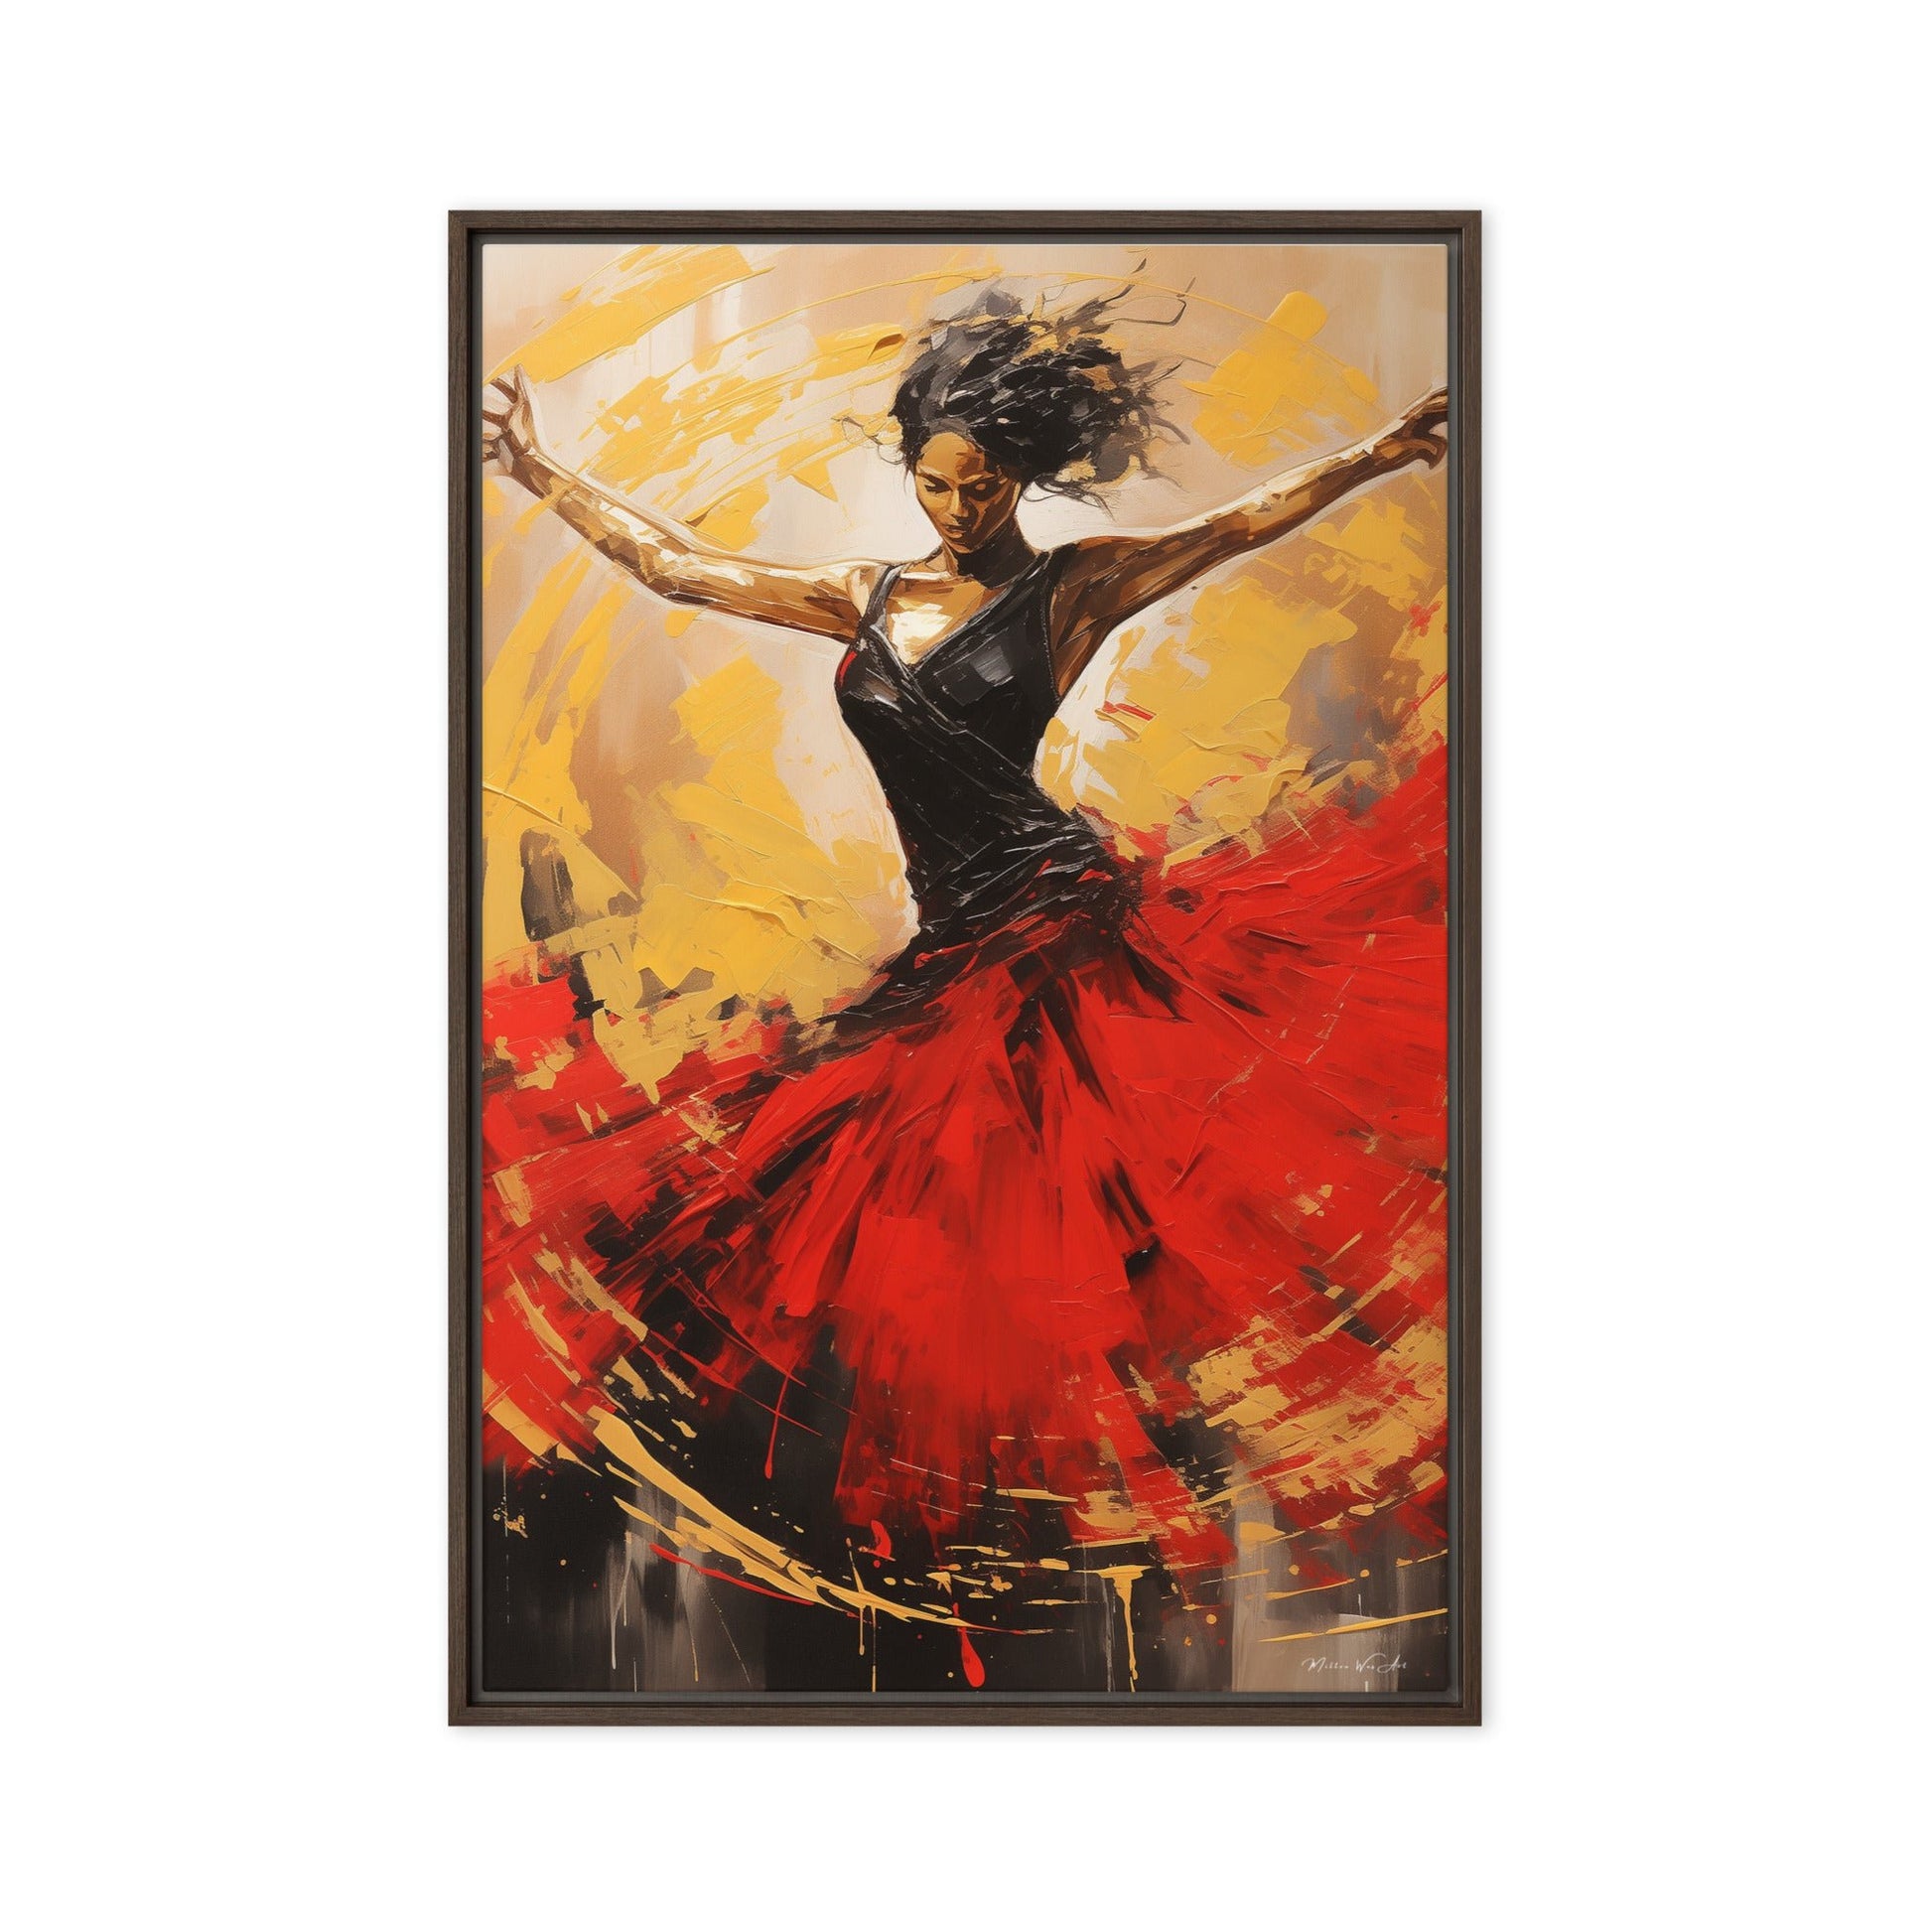 Misty Copeland-Inspired Ballerina Canvas Art - Elegant Pine Frame with Easy Mount - Milton Wes Art Framed Wall Art